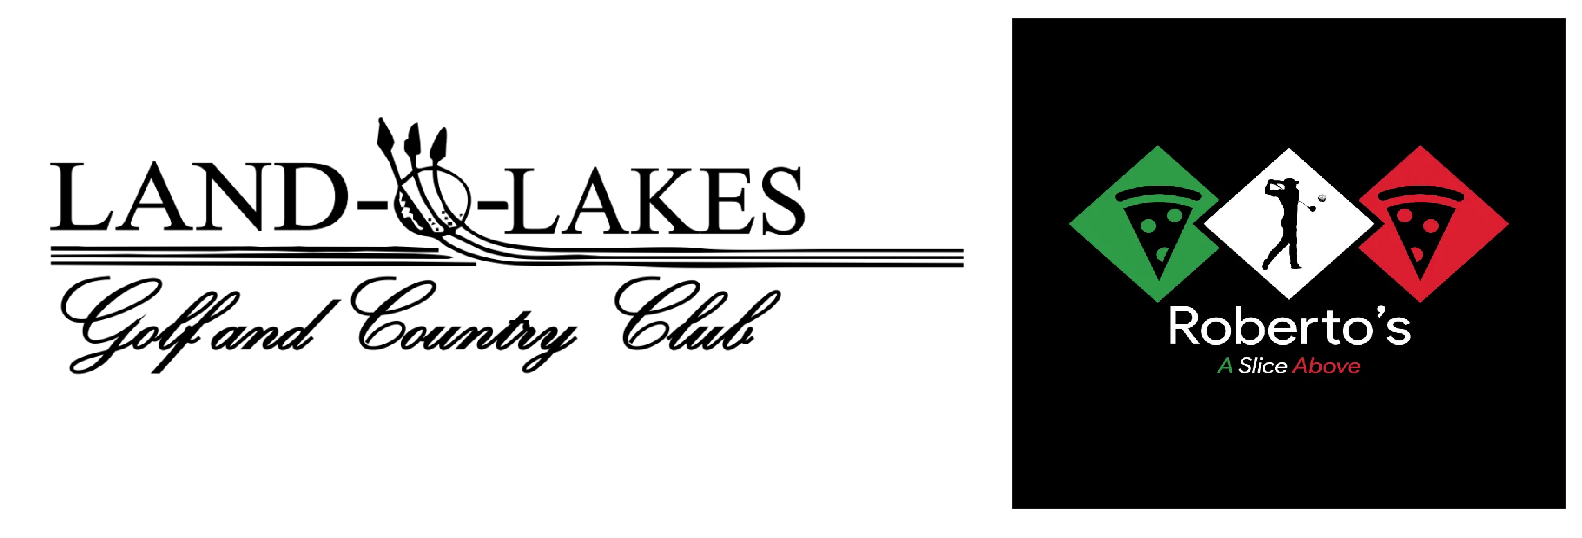 Land O Lakes Golf Course